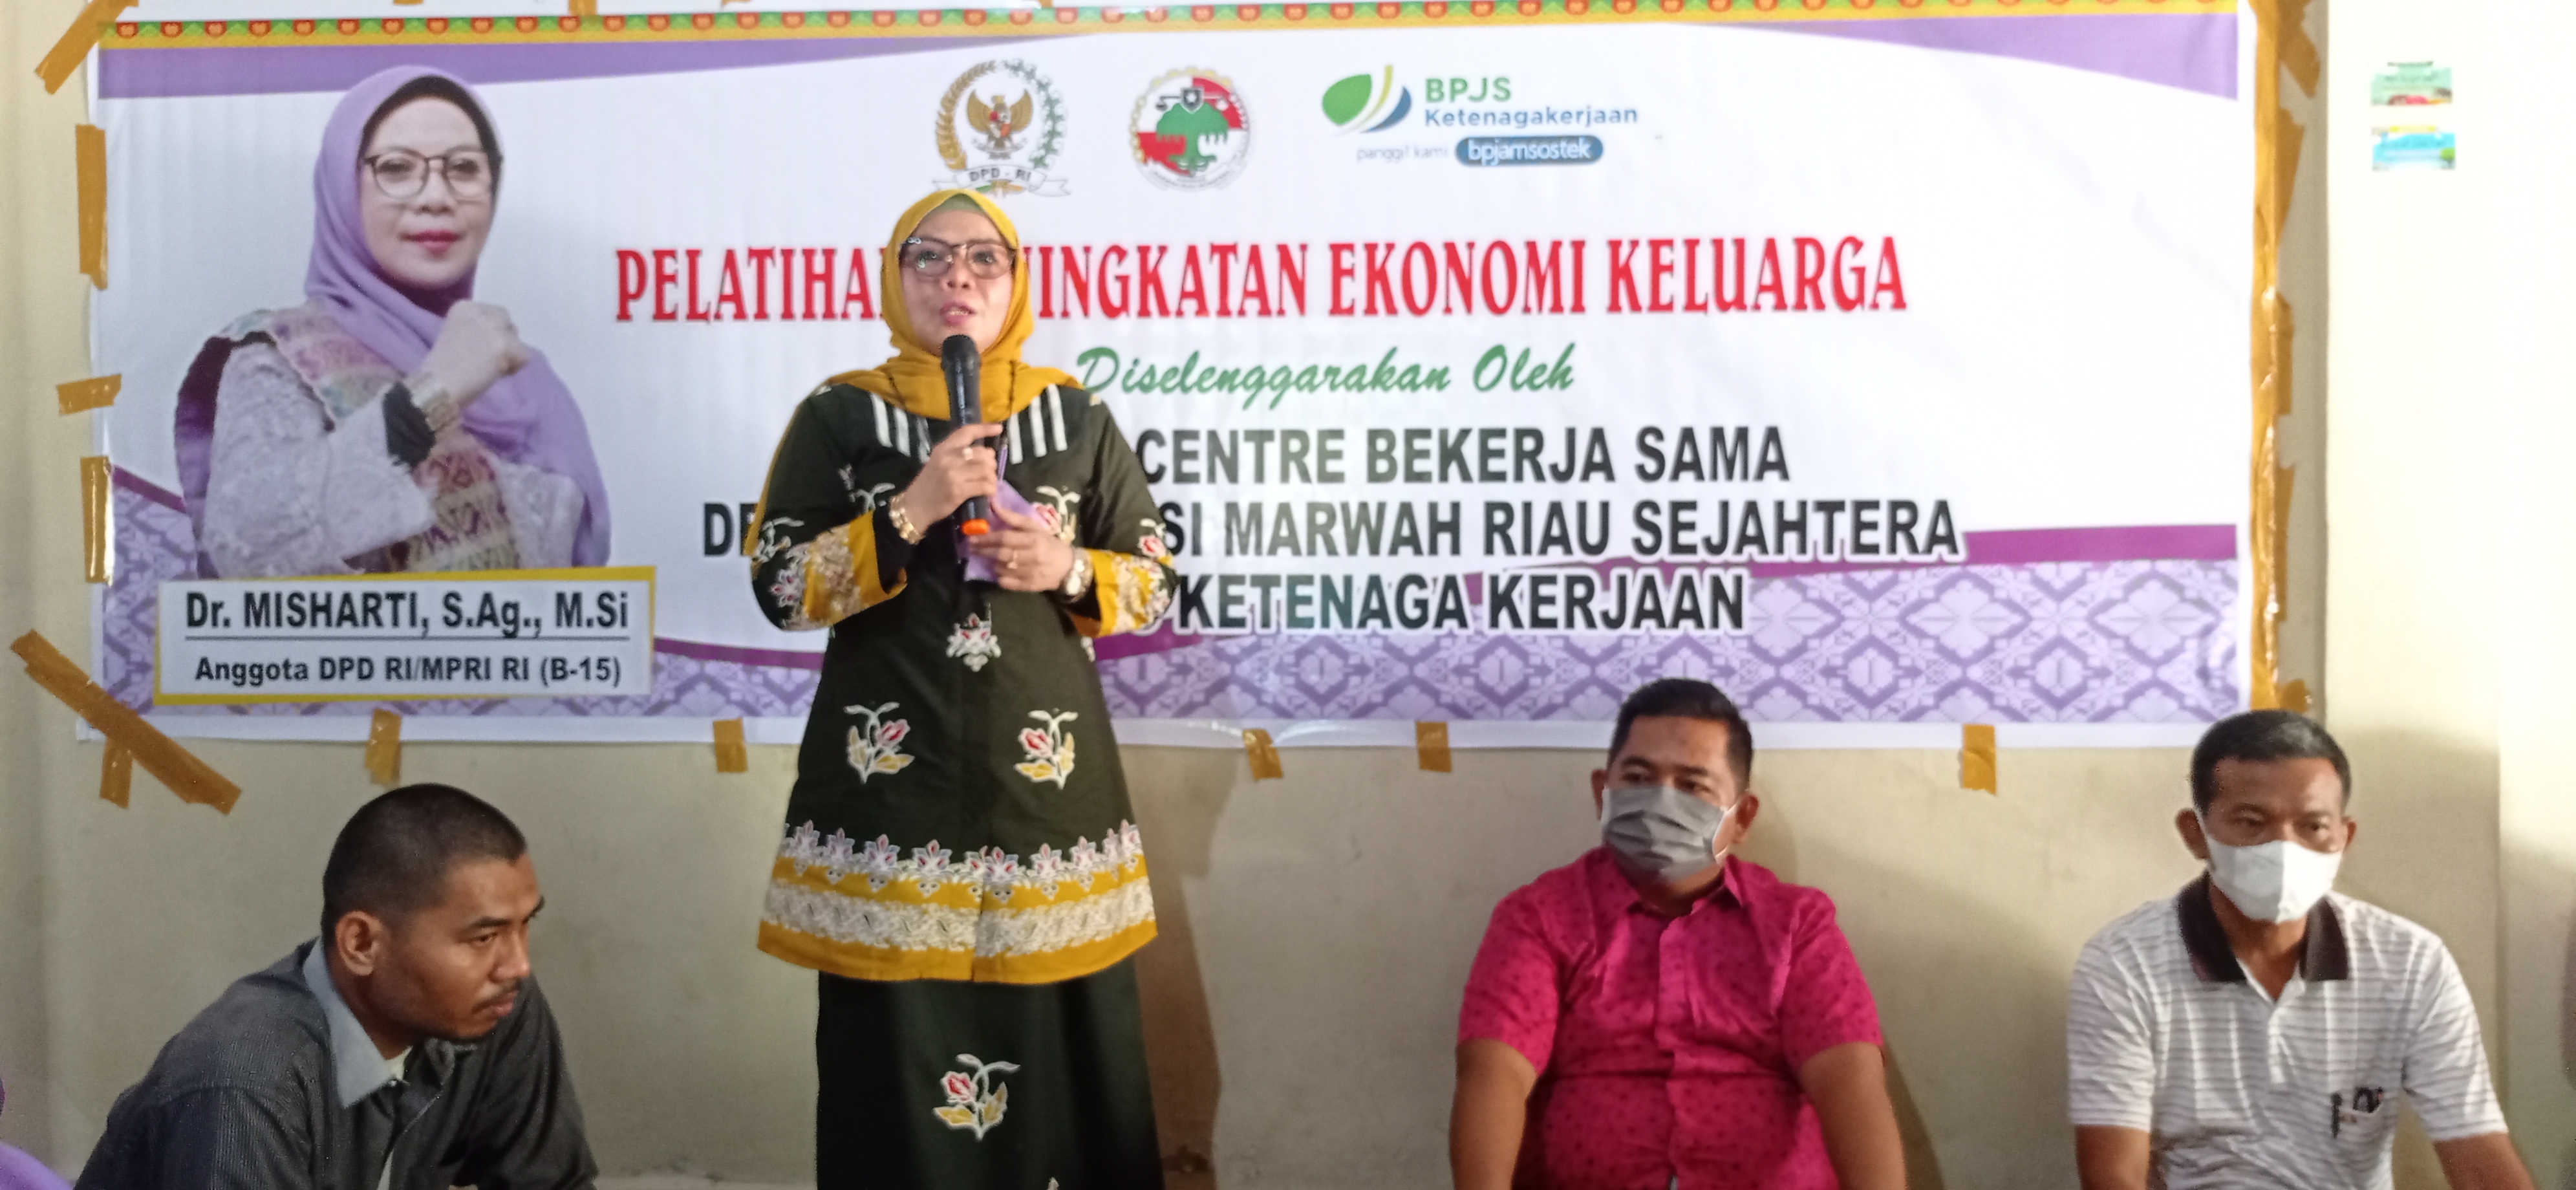 Misharti Center dan Koperasi Marwah Riau Sejahtera Gelar Pelatihan Peningkatan Ekonomi Keluarga